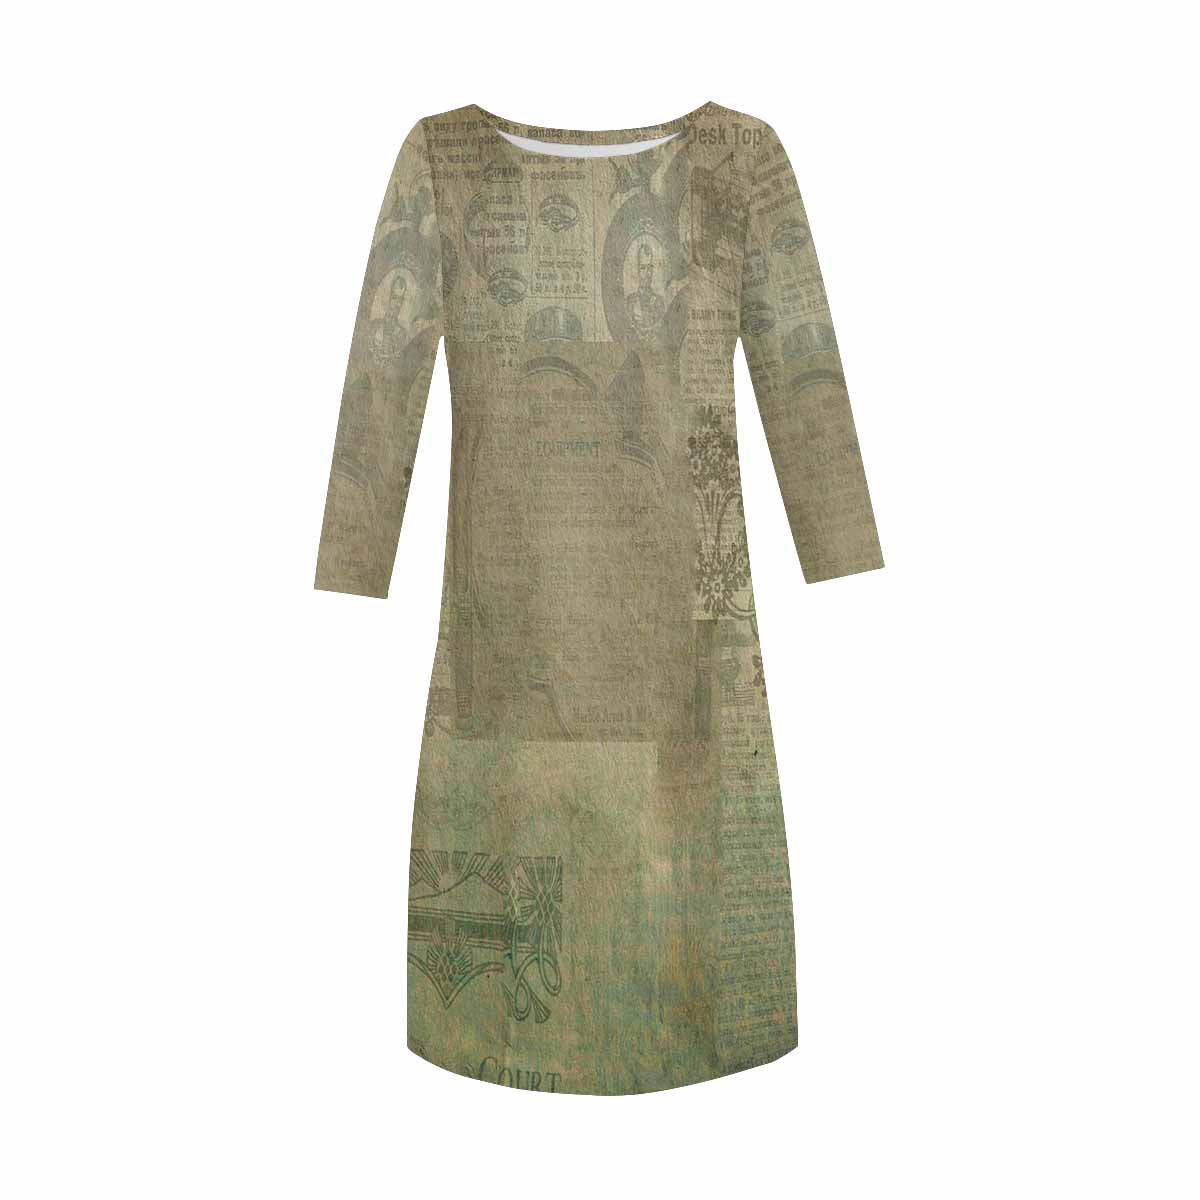 Antique General loose dress, MODEL 29532, design 32